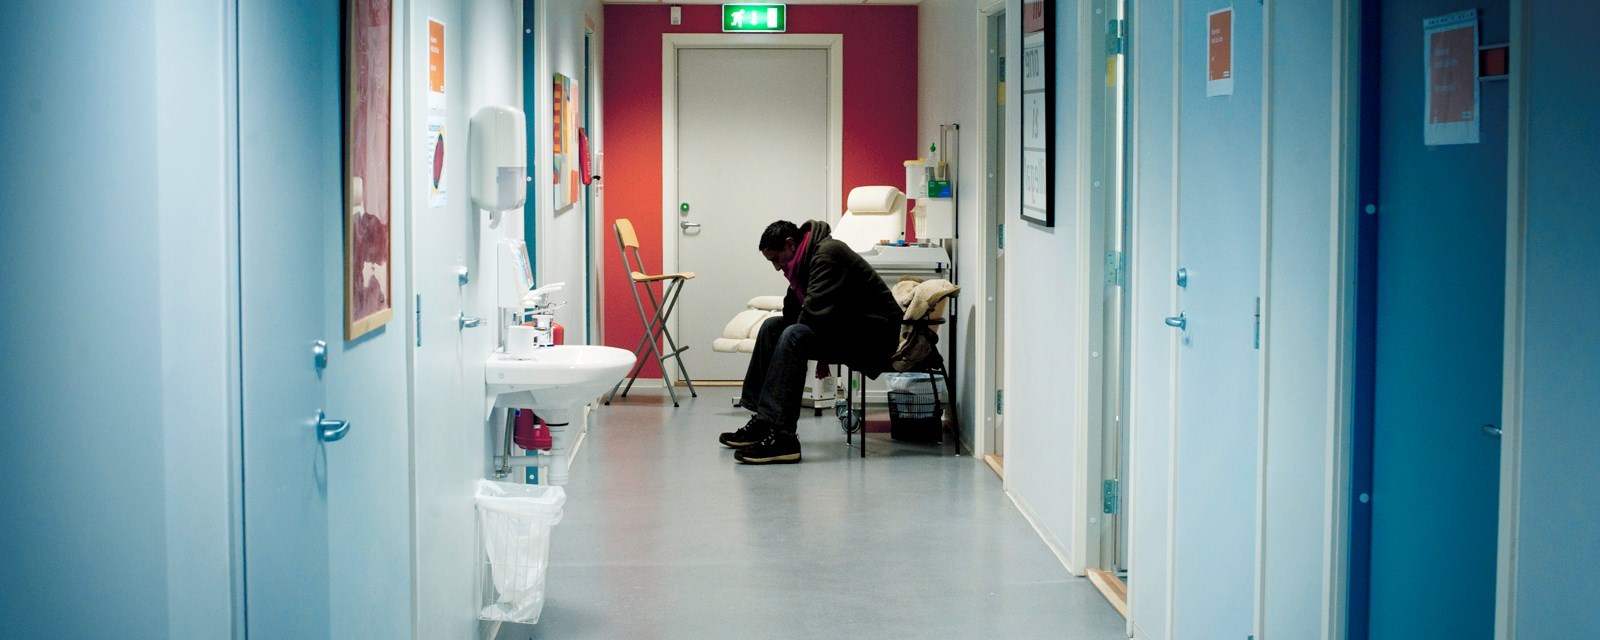 En mann sitter i en korridor og venter på behandling